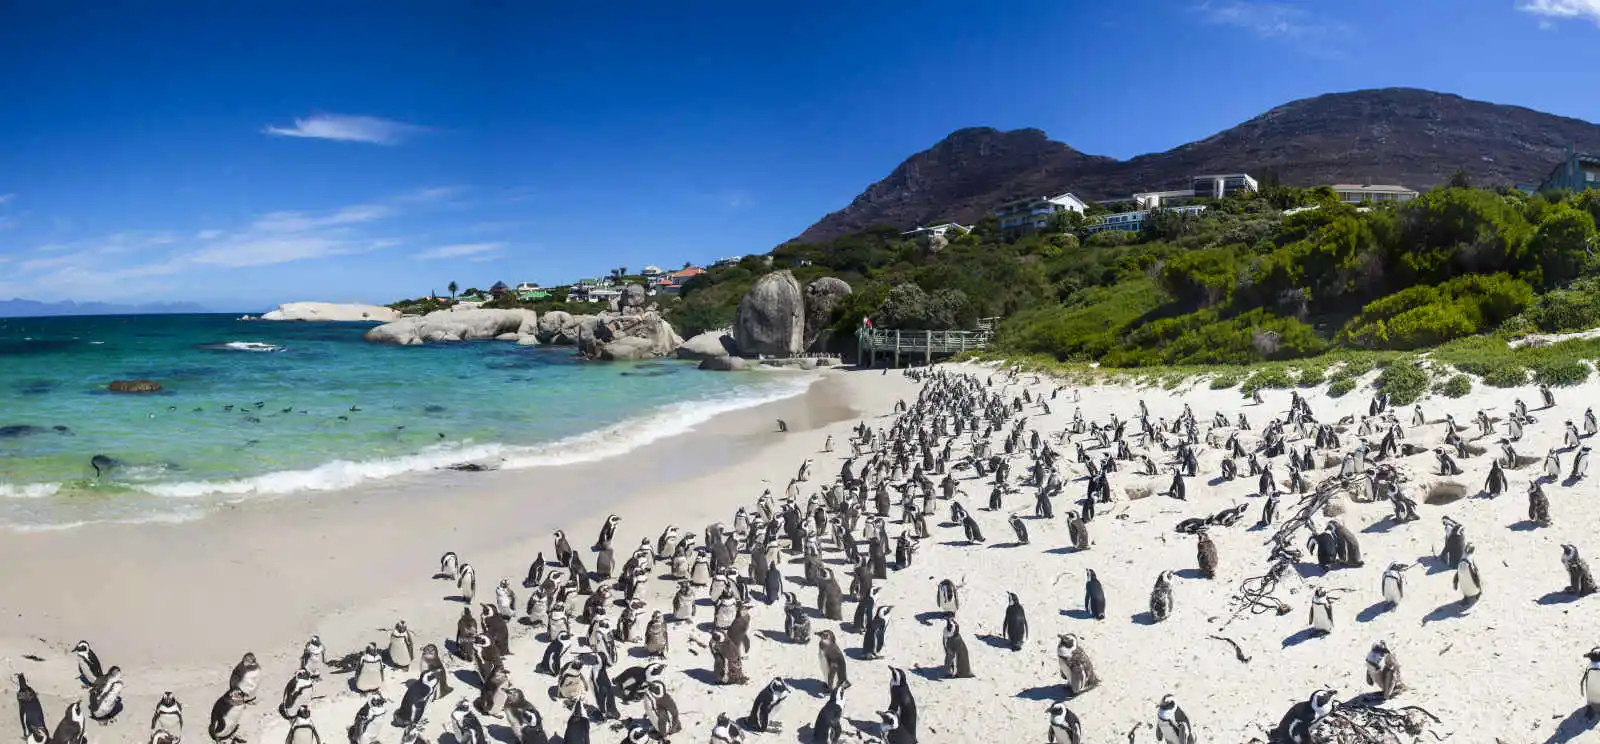 Colonie de manchots sur la plage de Boulders à Simon's Town, Cap Occidental, Afrique du Sud